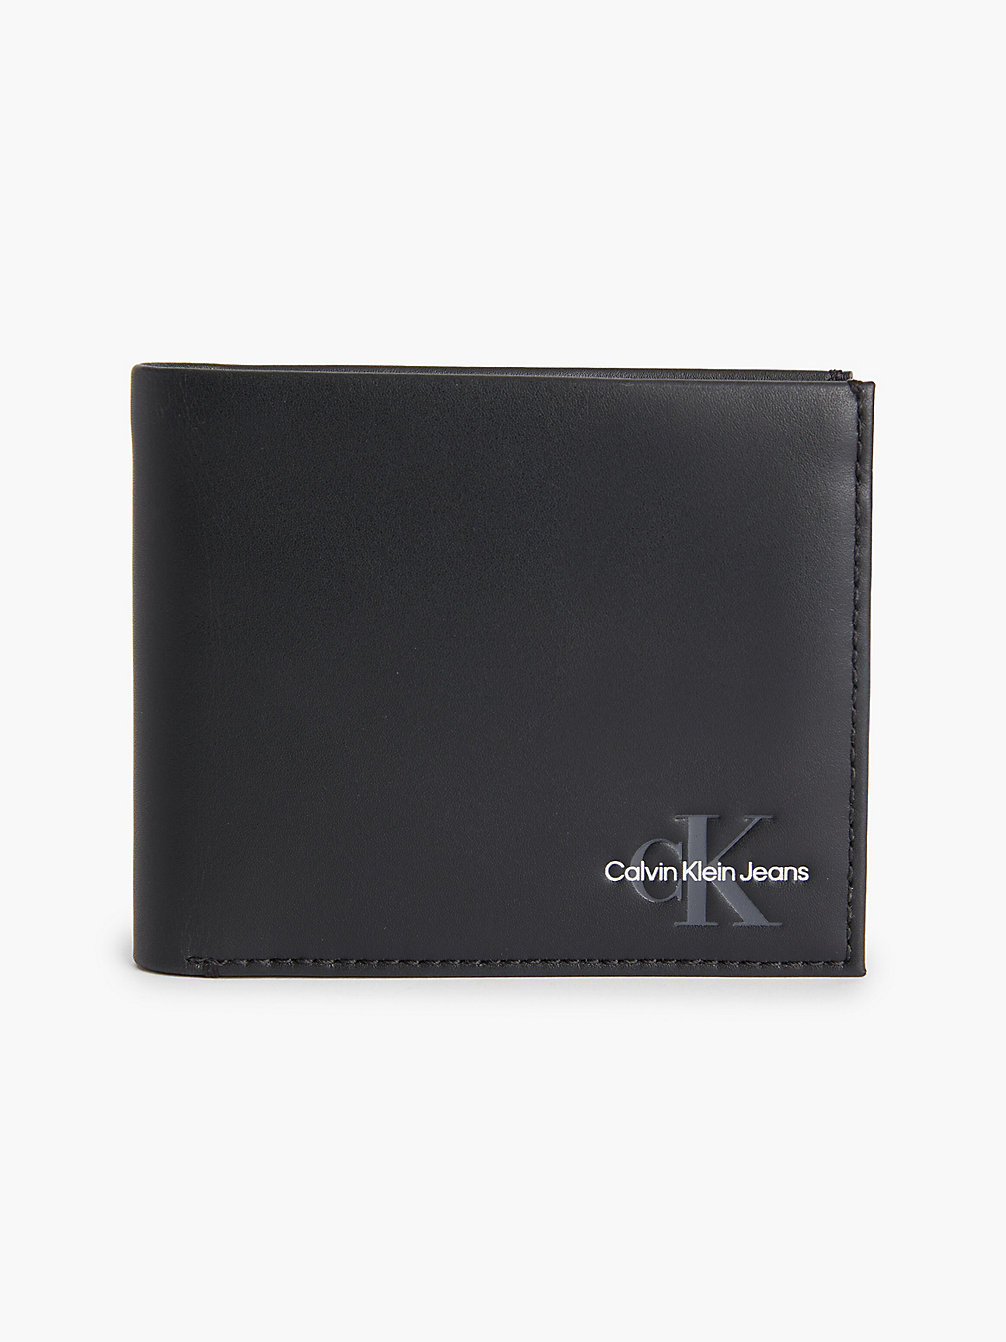 BLACK Leather Billfold Wallet undefined men Calvin Klein